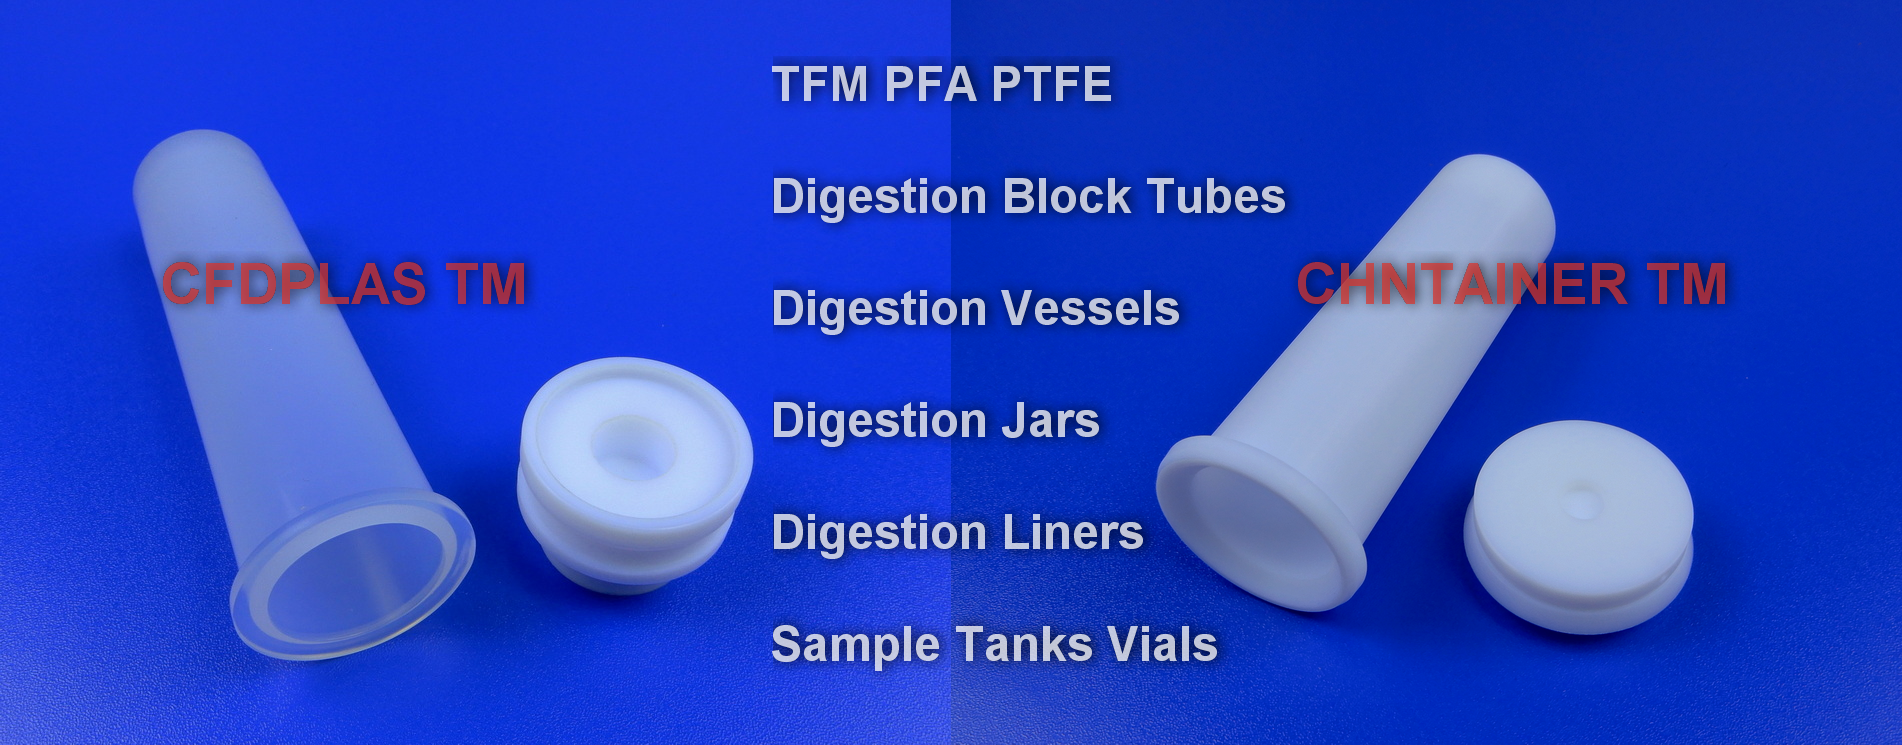 TFM_PFA_PTFE_Digestion_Vessel_Liner_Digestion_tubes_Vials_chntainer_cfdplas_001-EN